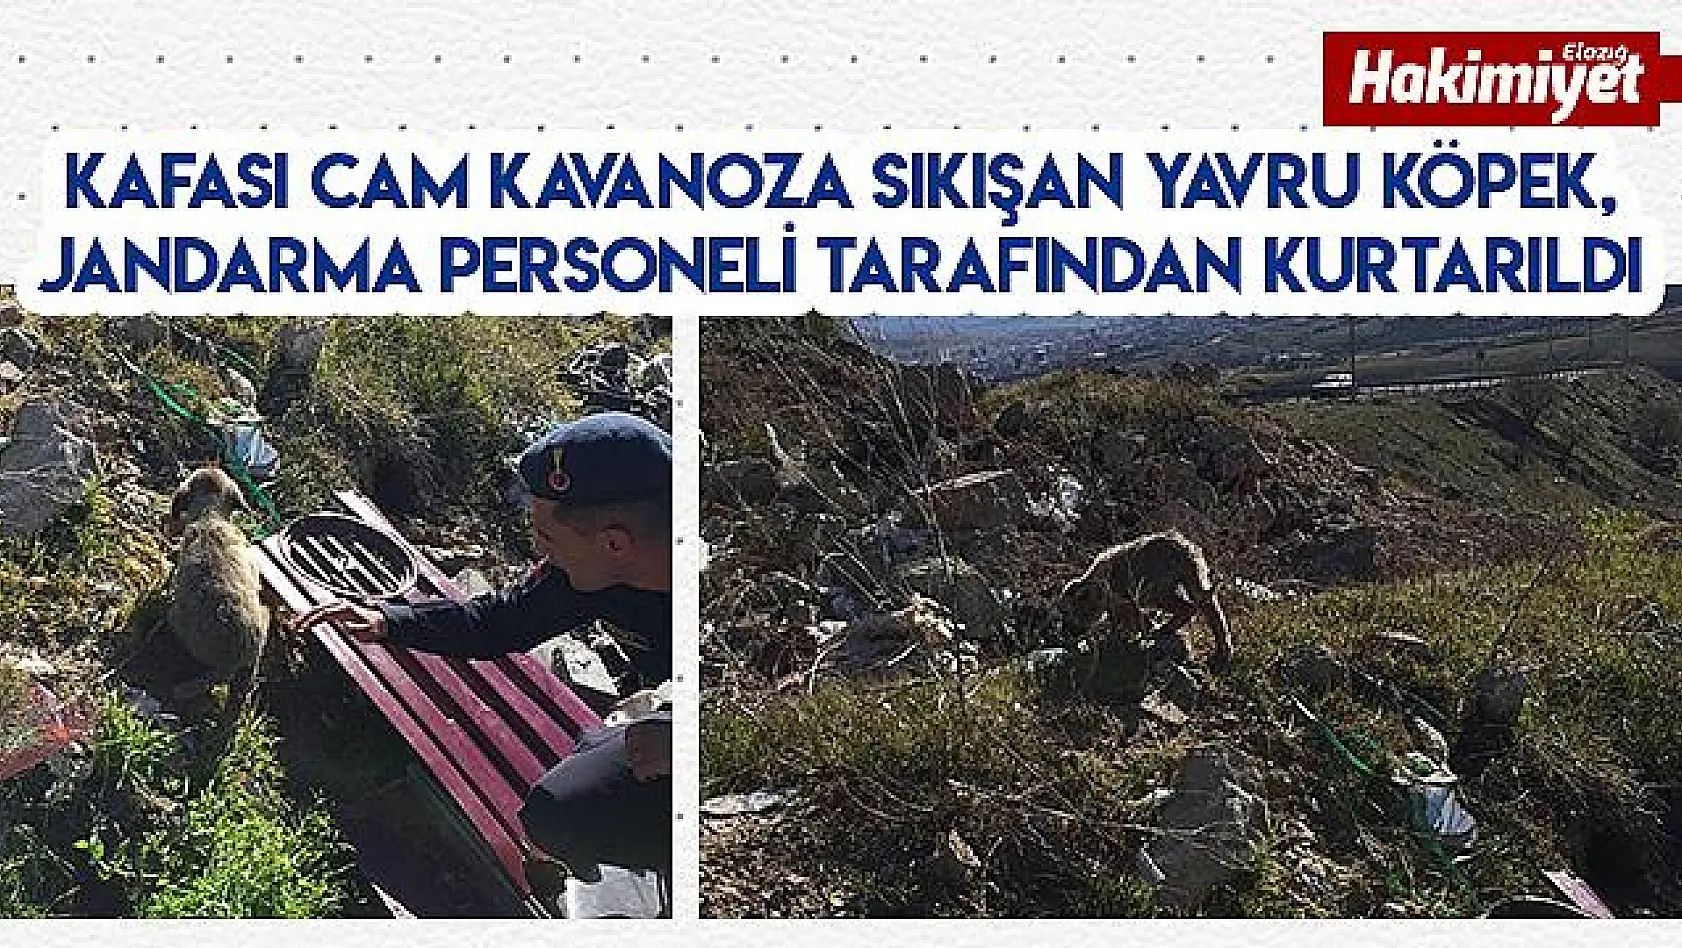 Kafası kavanoza sıkışan yavru köpeği Mehmetçik kurtardı  